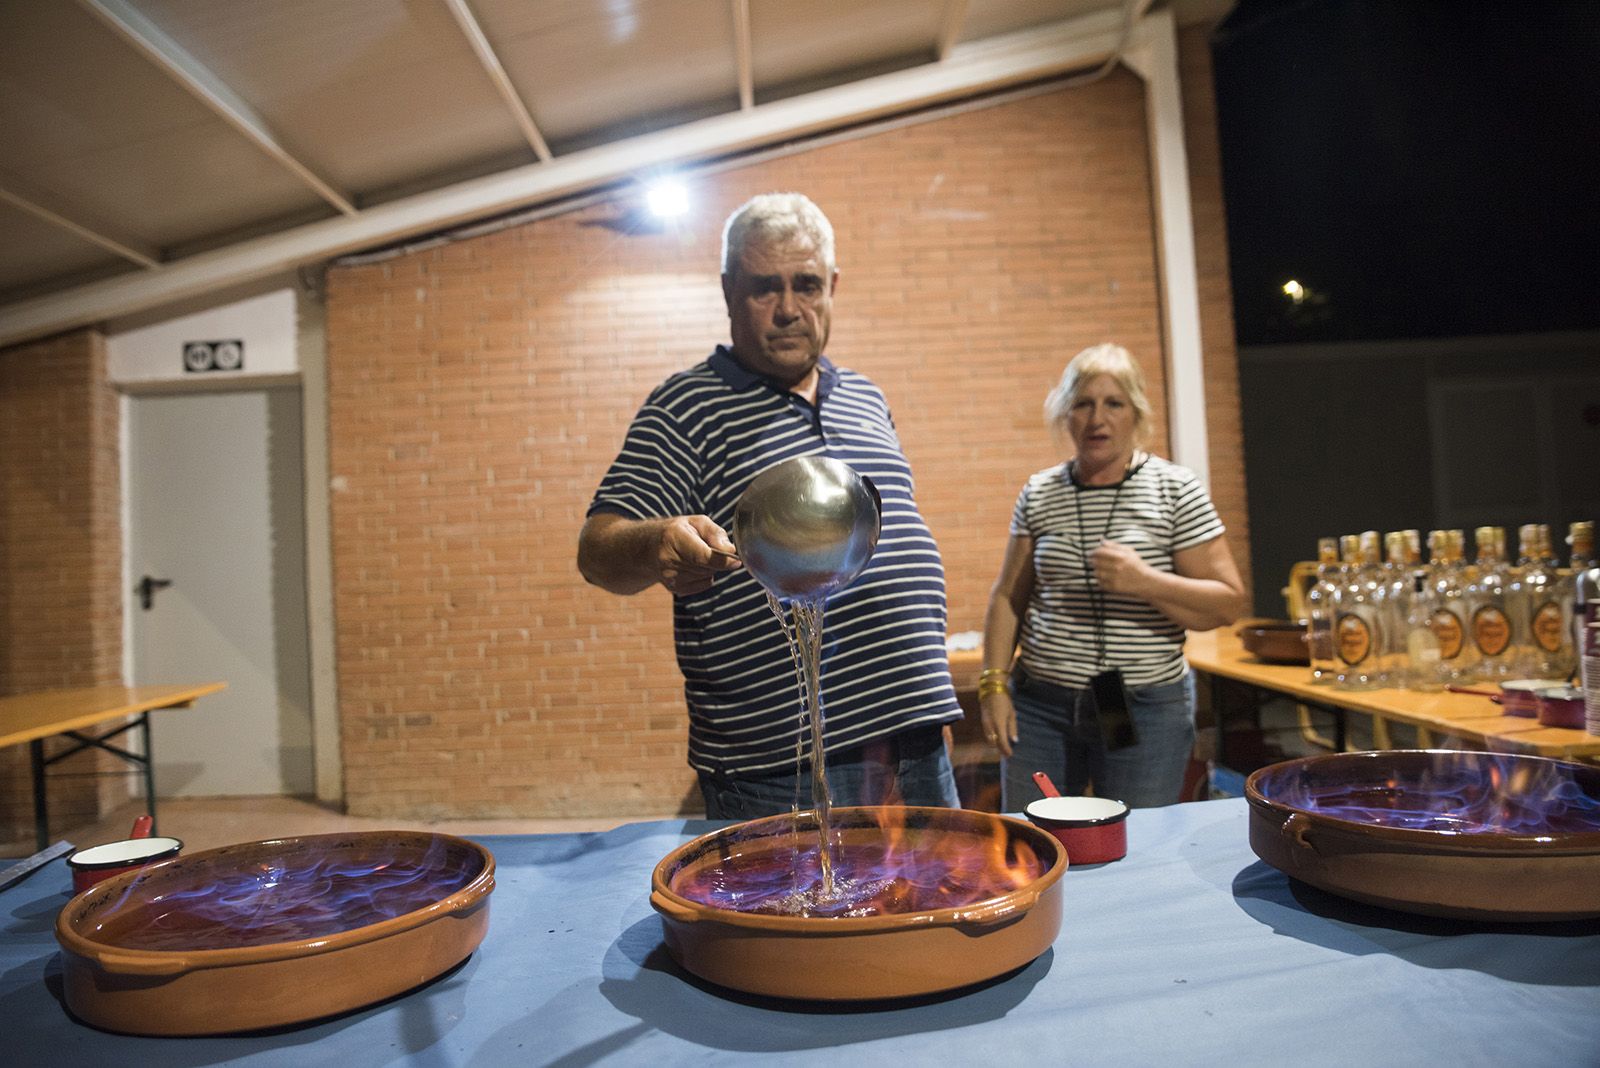 Havaneres amb "Havaneres i canço de taverna" i cremat popular de Festa Major de Valldoreix. Foto: Bernat Millet.